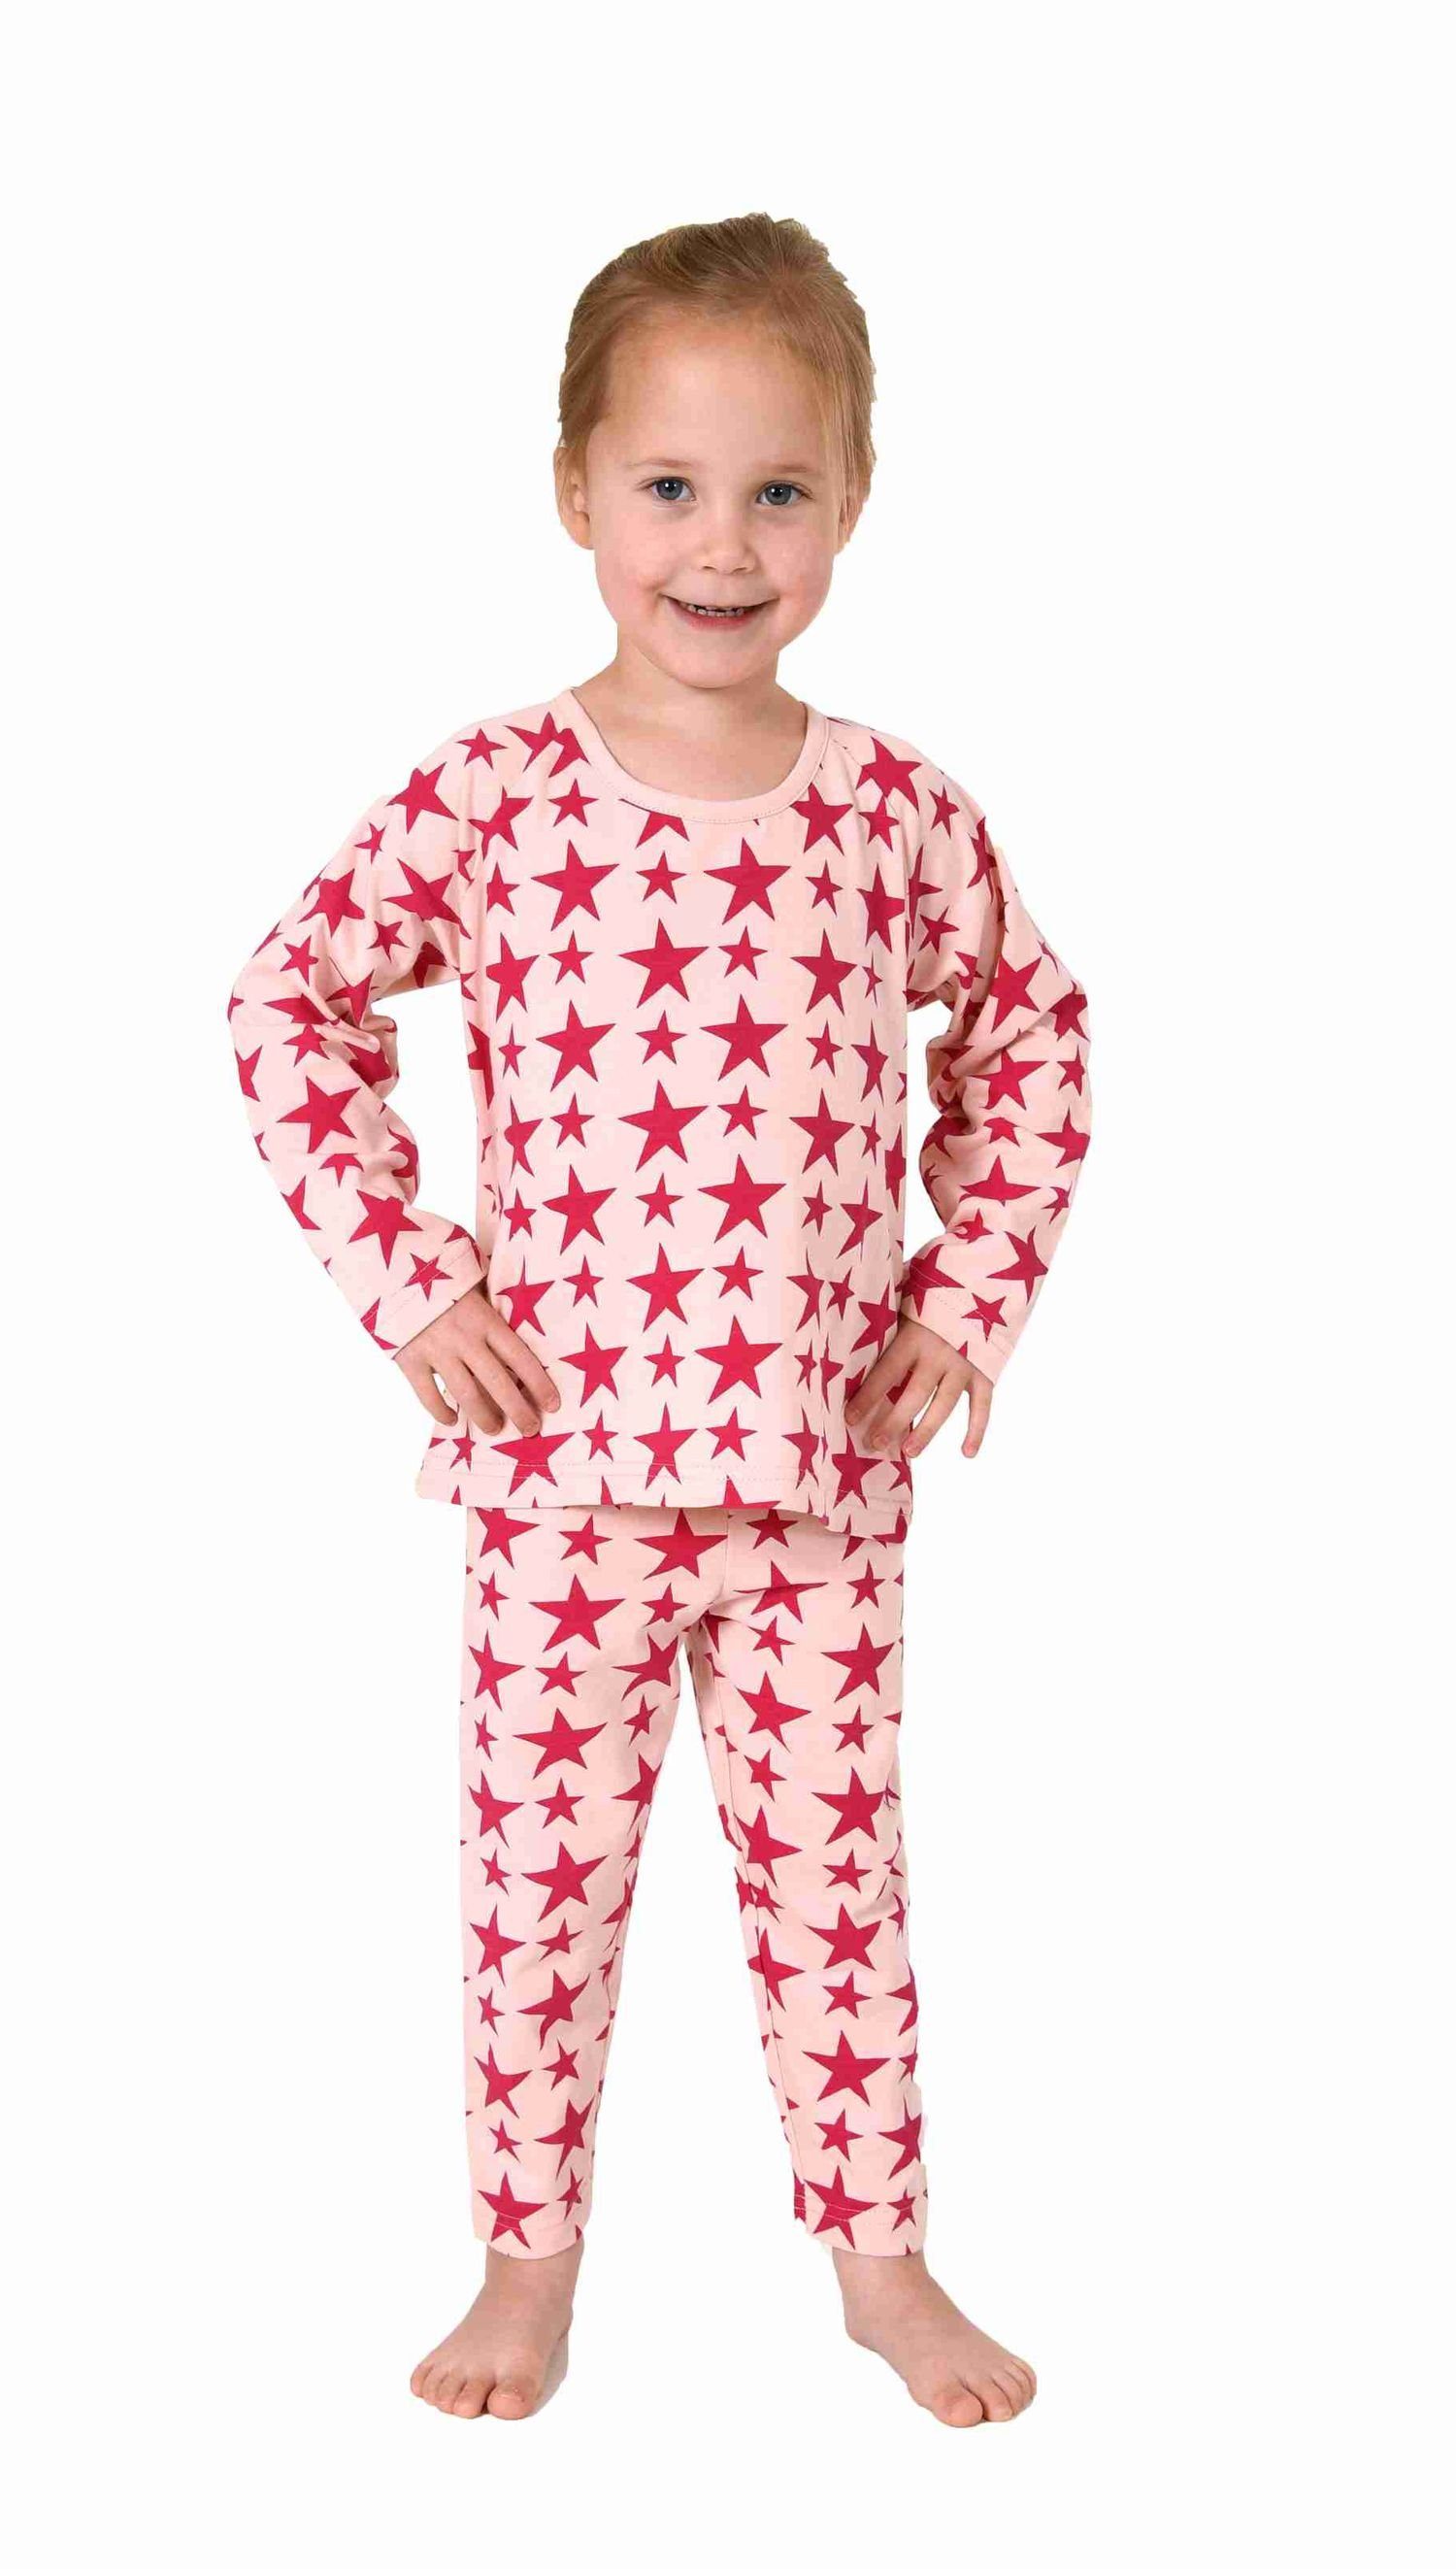 Normann langarm Schlafanzug in Wunderschöner Kleinkinder Mädchen Pyjama pink Sterne Optik